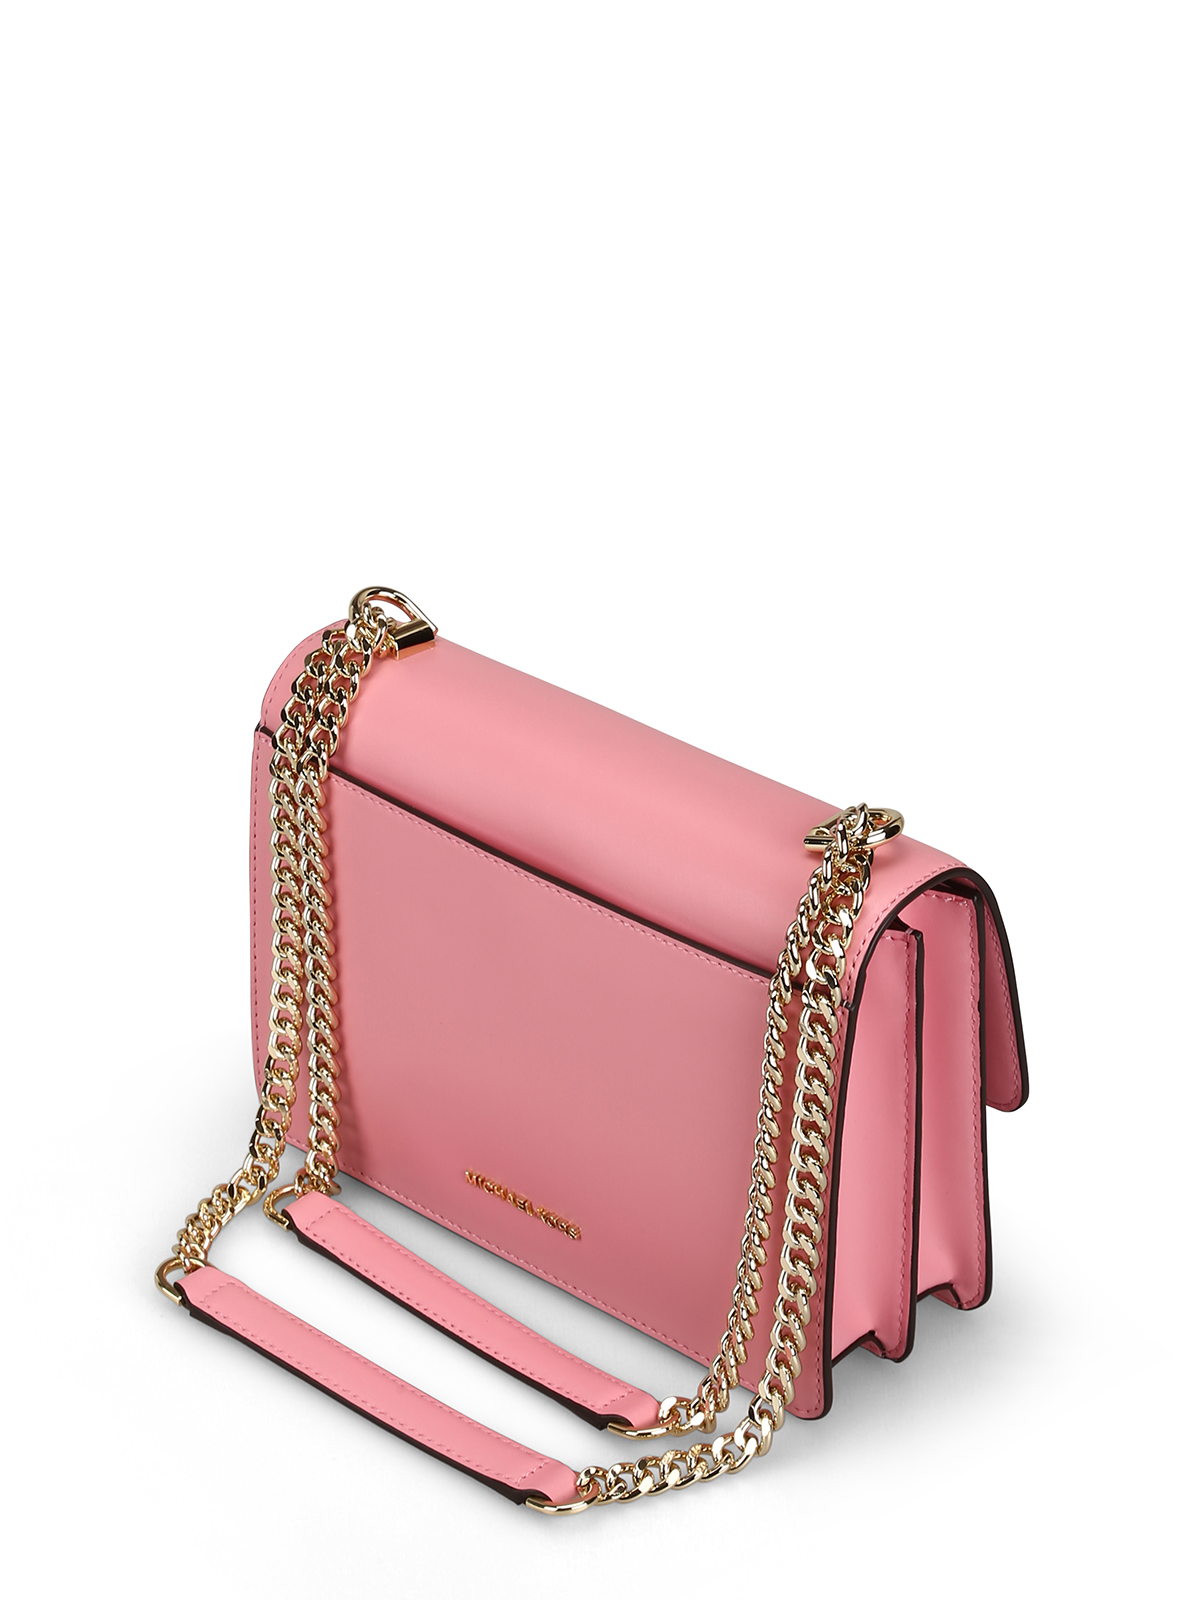 Shoulder bags Michael Kors - Jade L pink smooth leather bag - 30S9LJ4L9L611